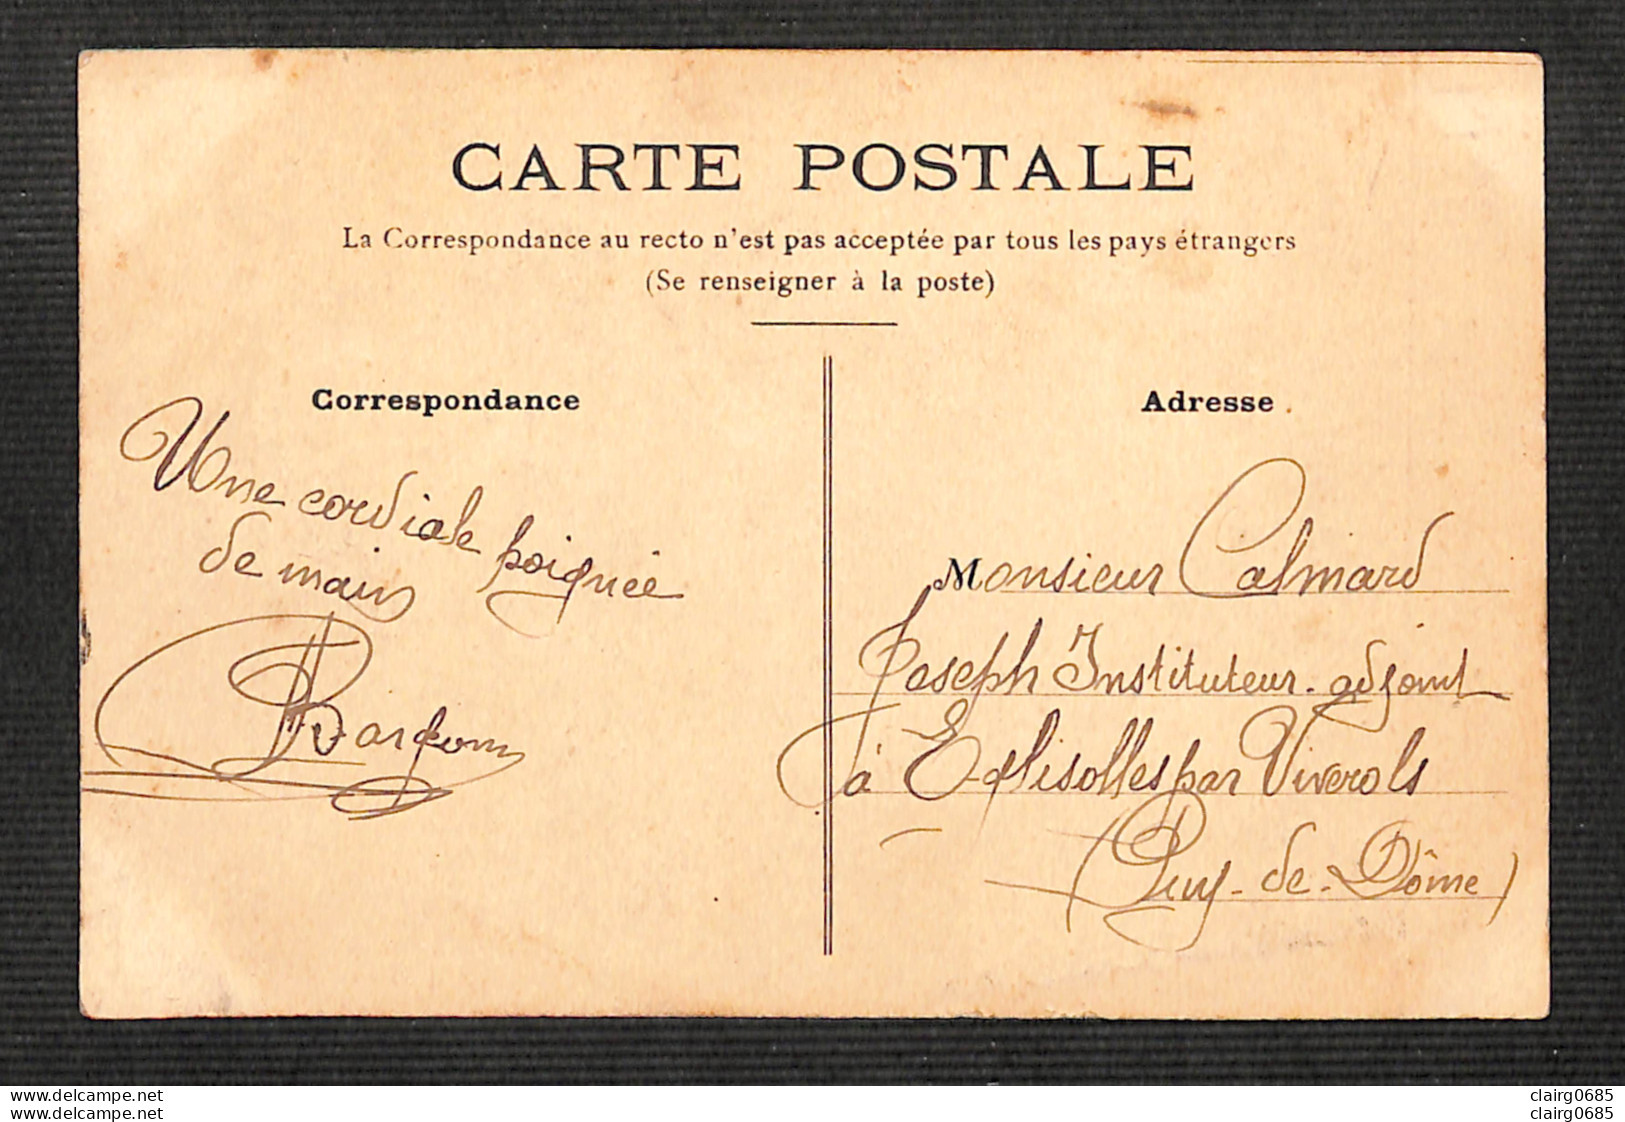 POLITIQUE - SATIRIQUES - Le Sacré Déménagement - 1908 - Satirische